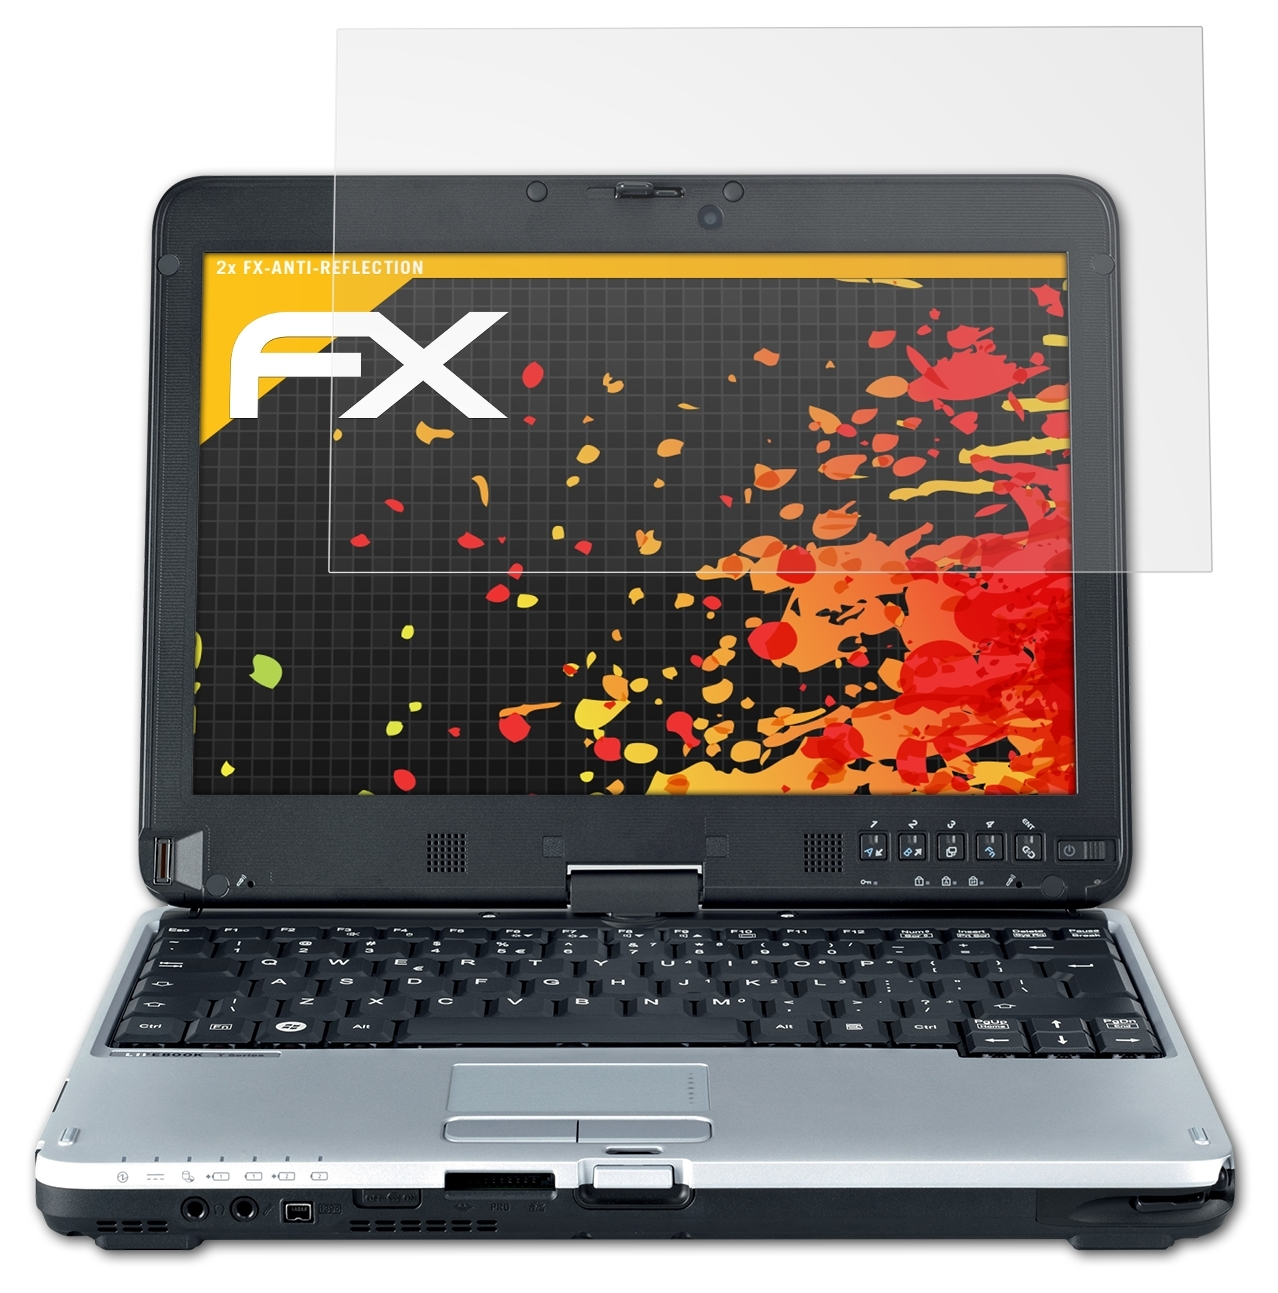 ATFOLIX 2x FX-Antireflex Displayschutz(für Fujitsu Lifebook T730)